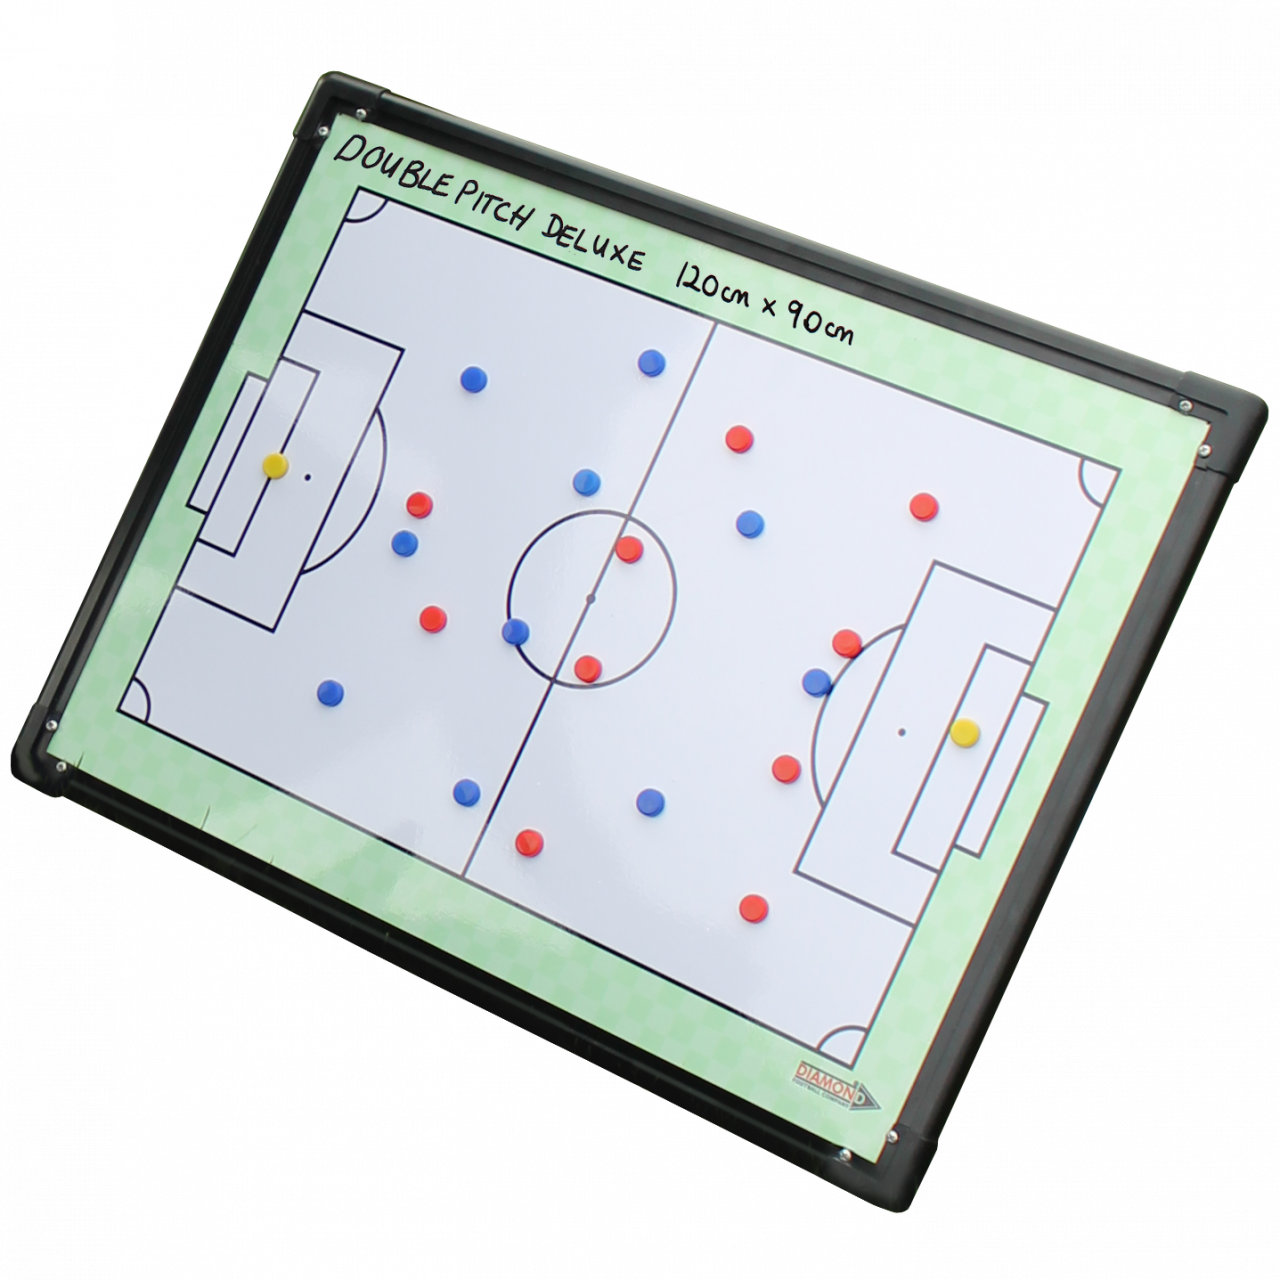 soccer tactic board app for macbook